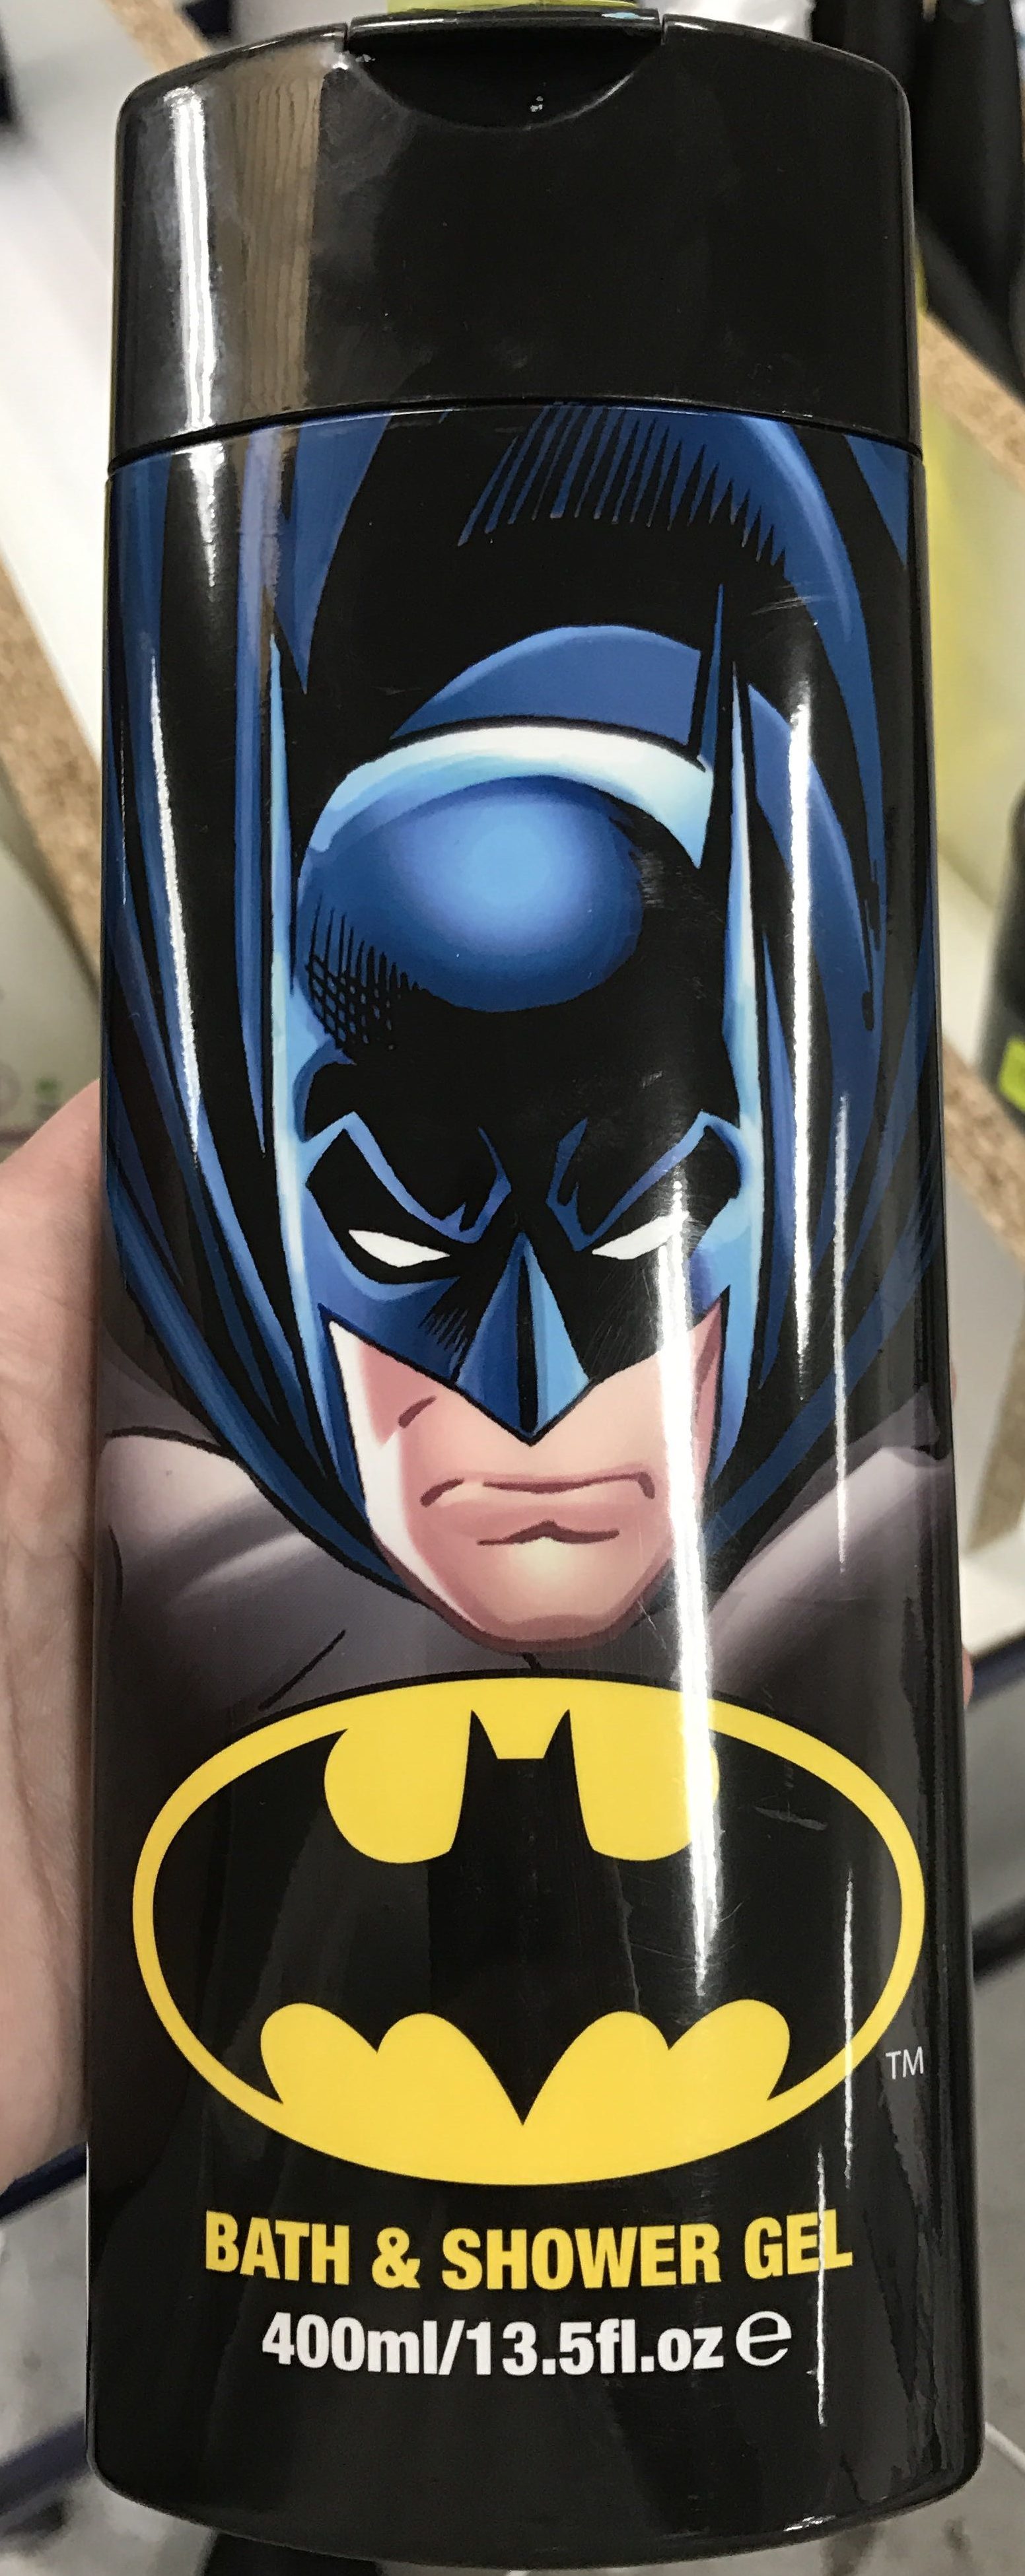 Bath & Shower Gel Batman - Product - fr